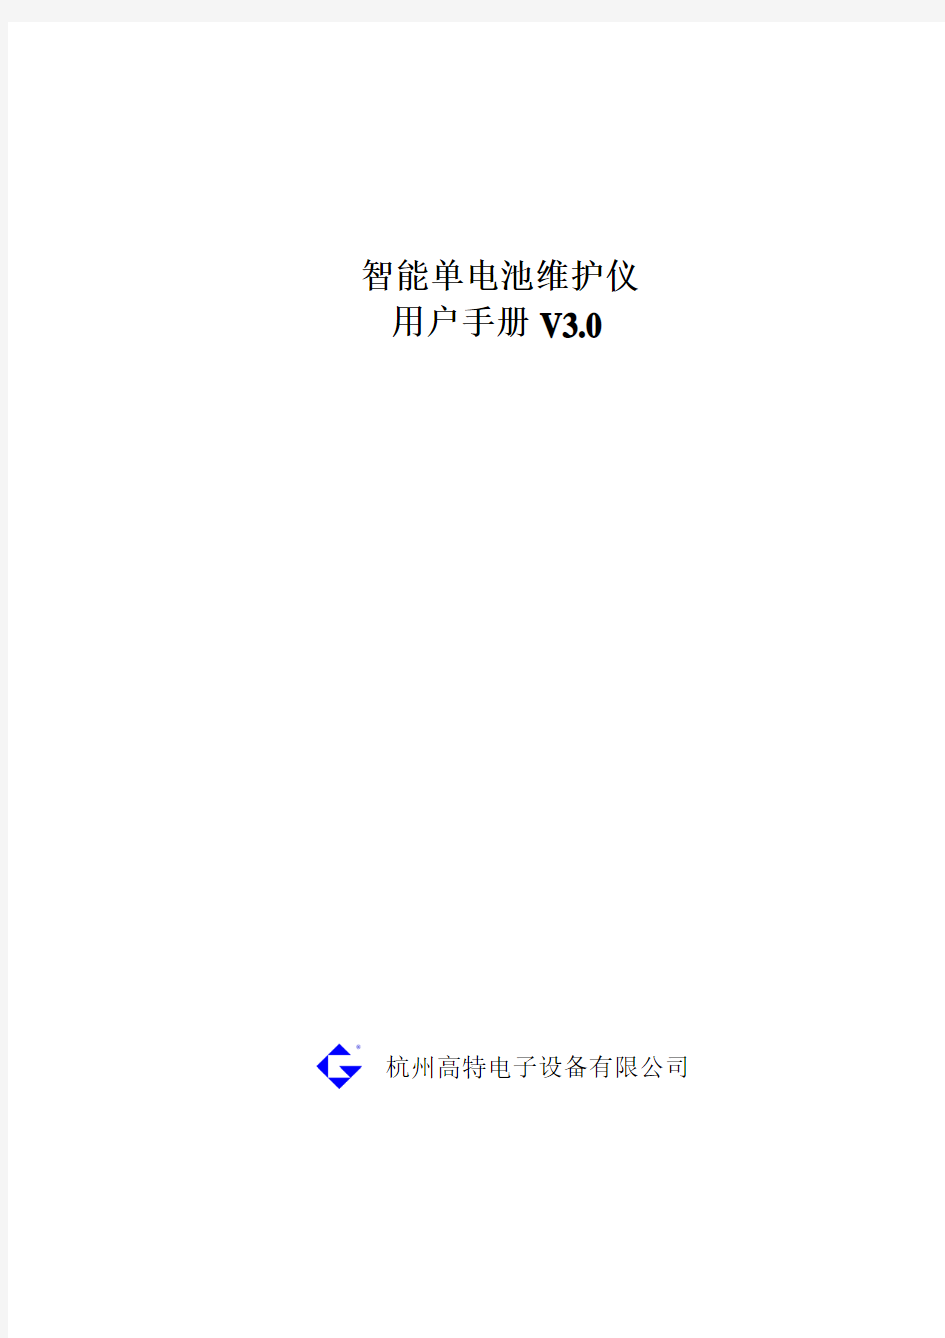 智能单电池维护仪V3.0-杭州高特电子设备有限公司